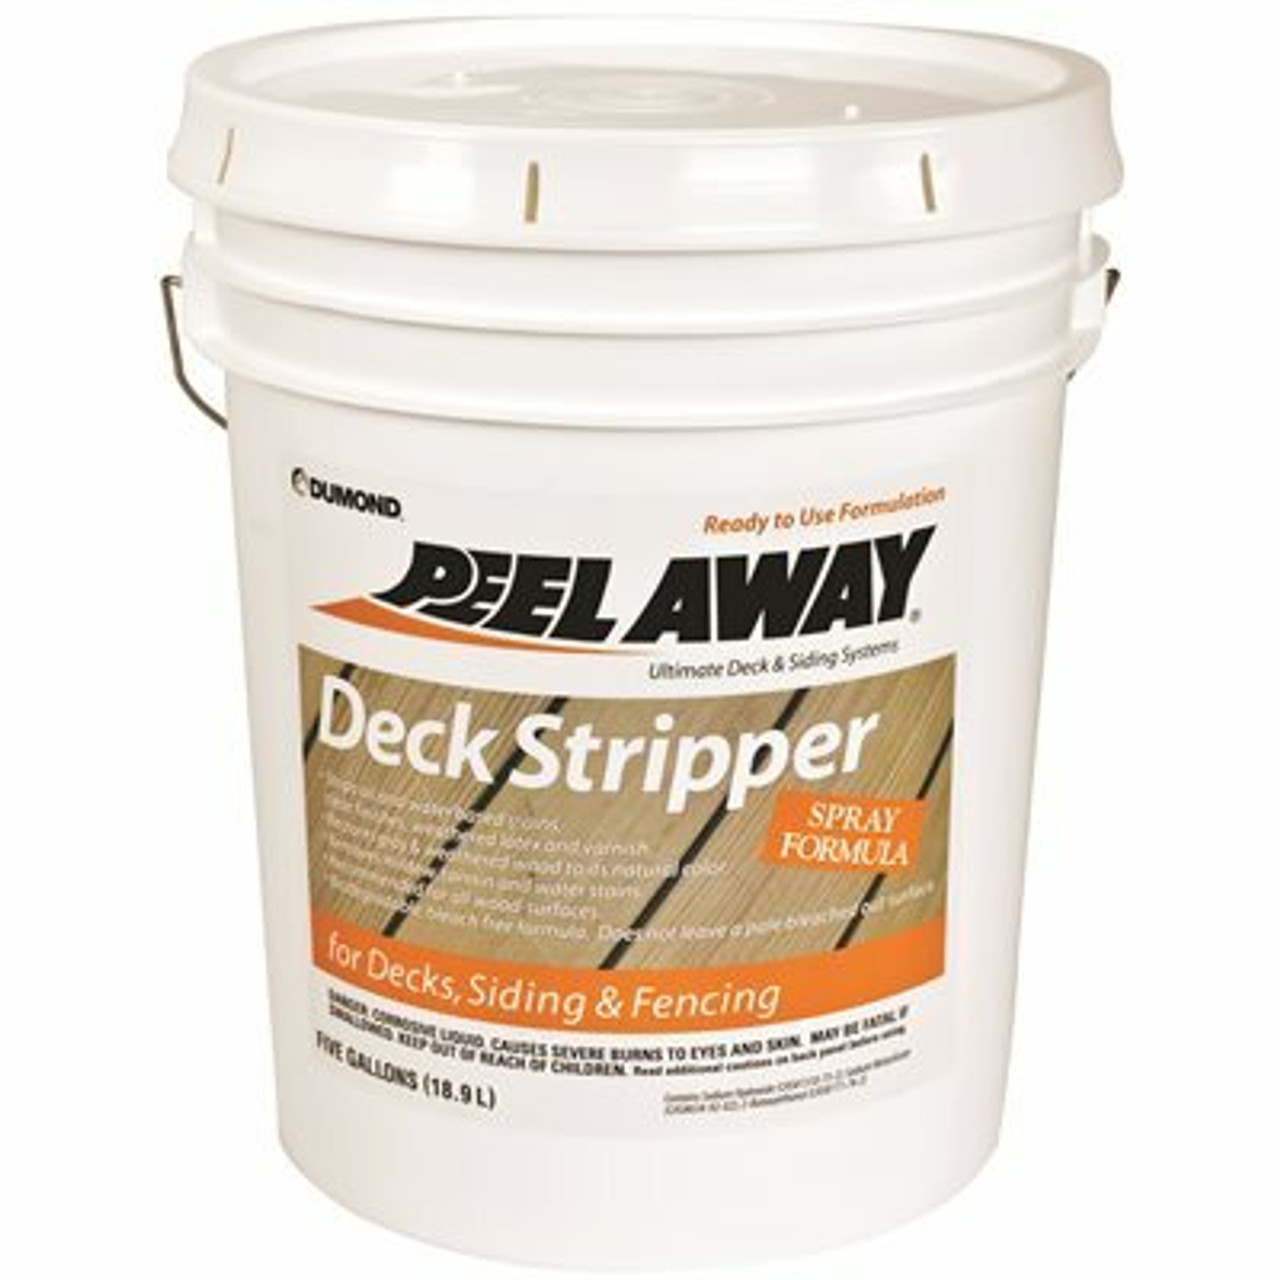 Peel Away 5 Gal. Deck Stripper